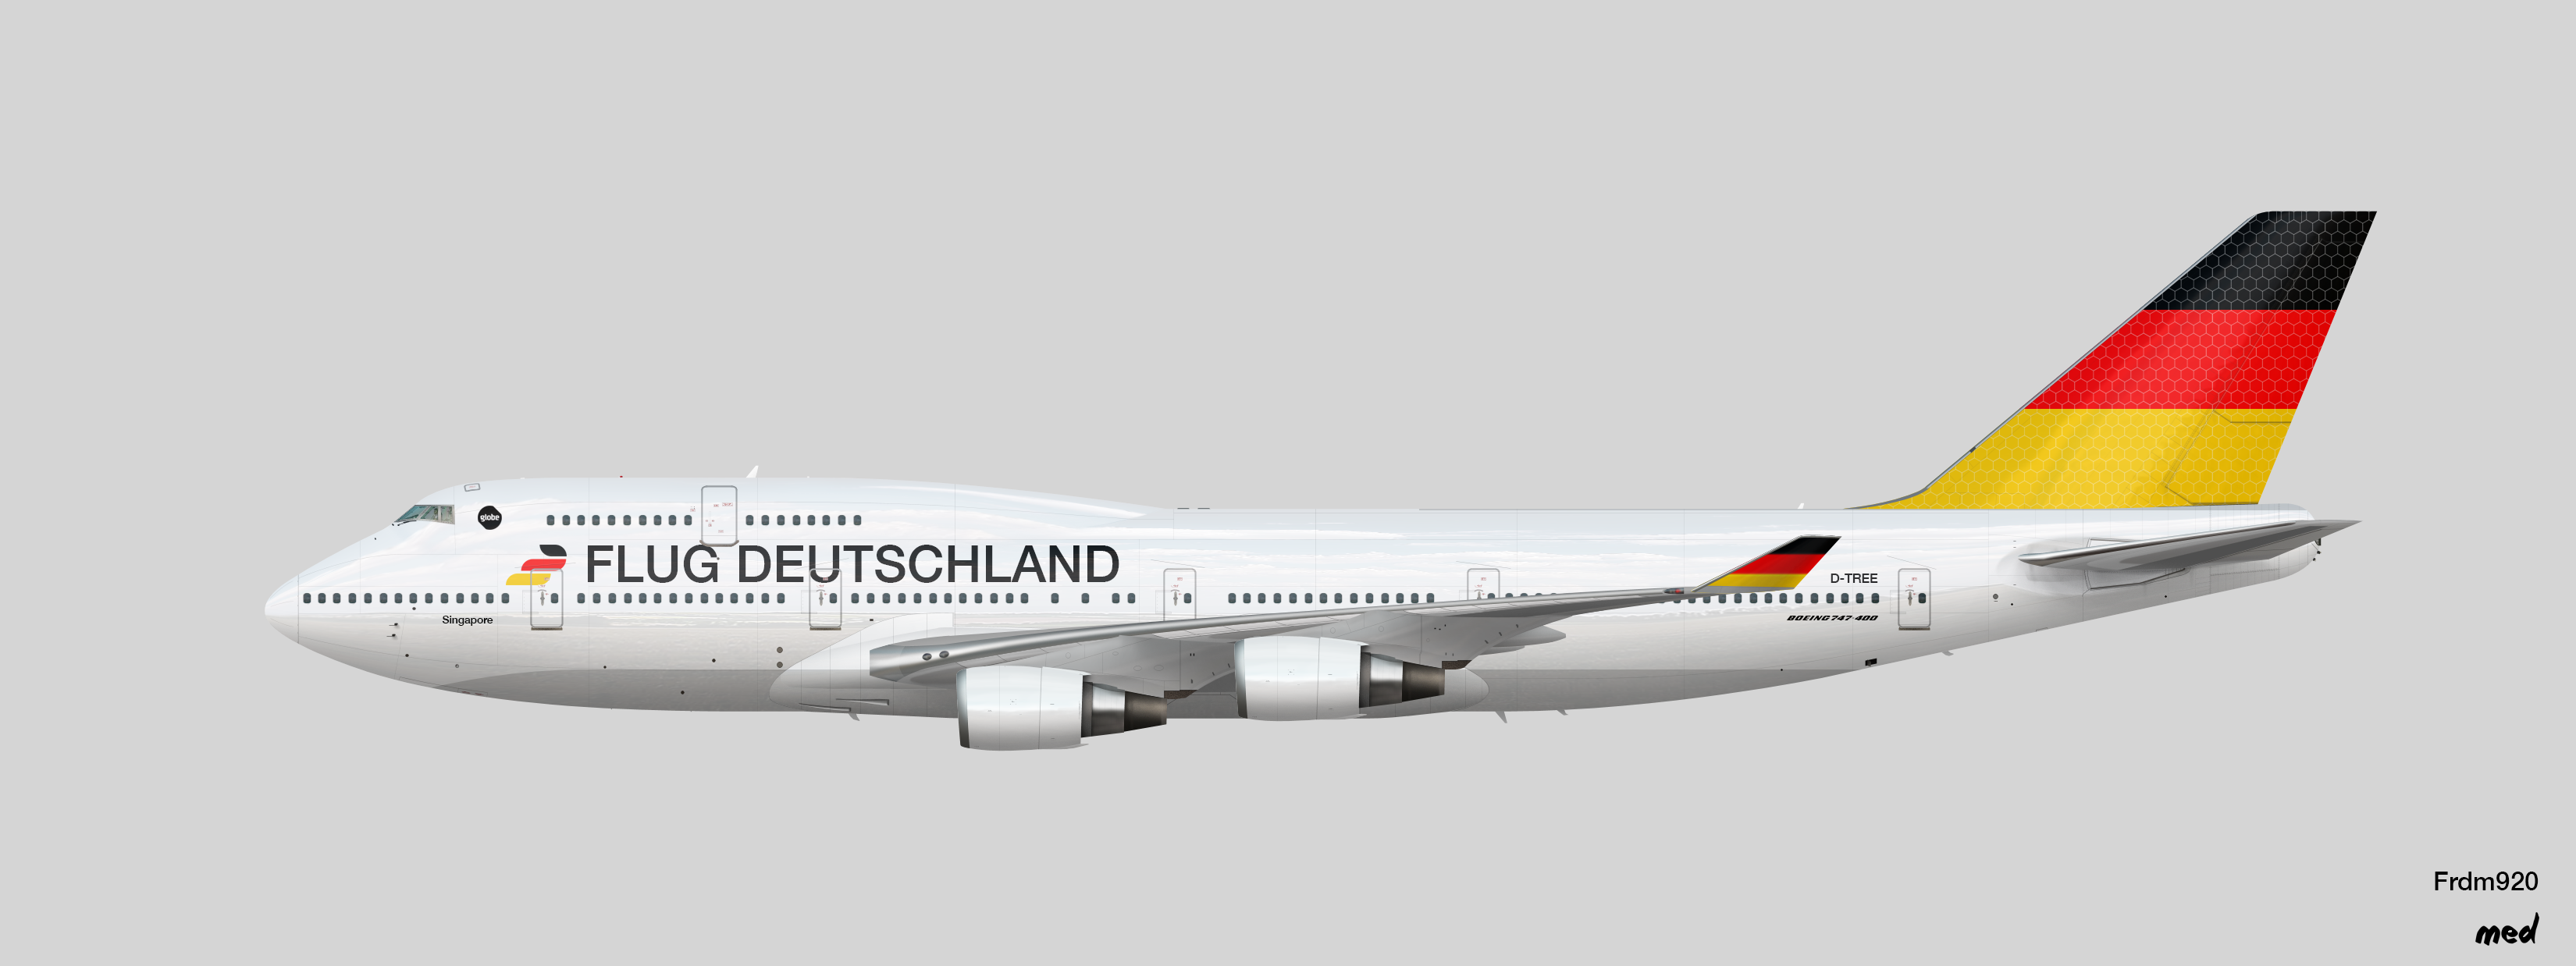 Flug Deutschland Boeing 747-400 - Frdm's Liveries and other random stuff -  Gallery - Airline Empires